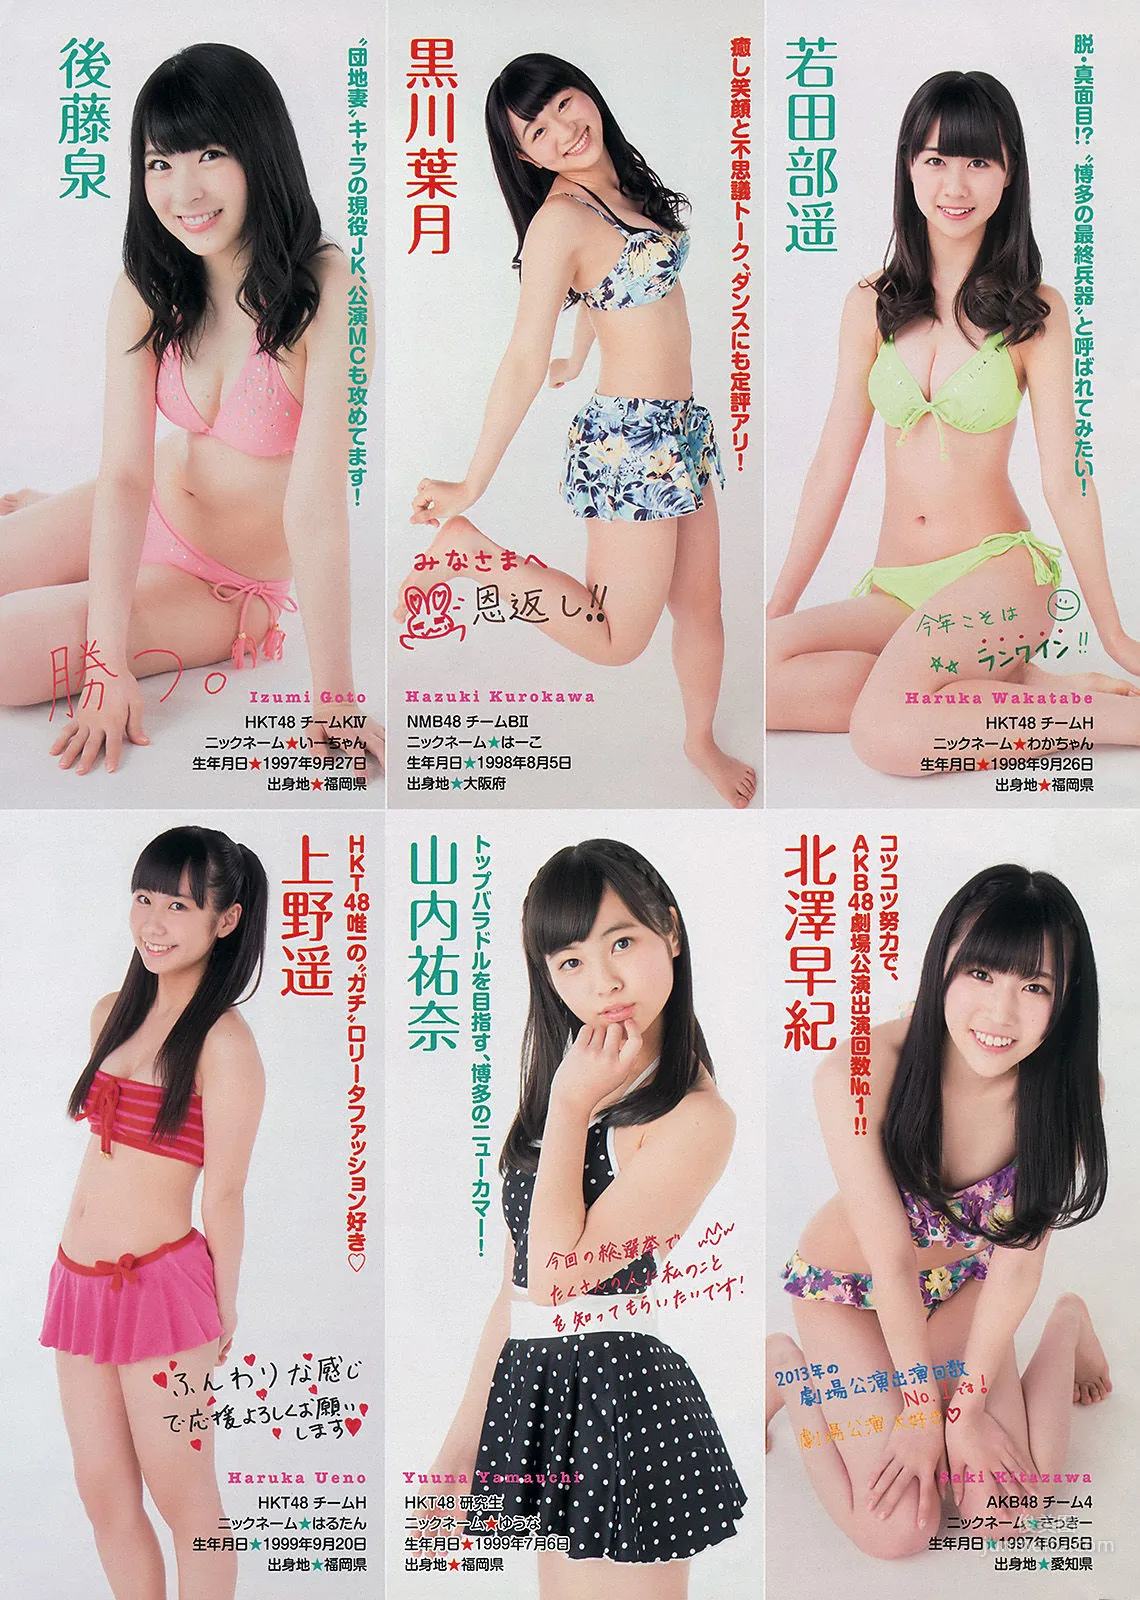 [Young Magazine] 渡辺麻友 川栄李奈 2401年No.27 写真杂志15